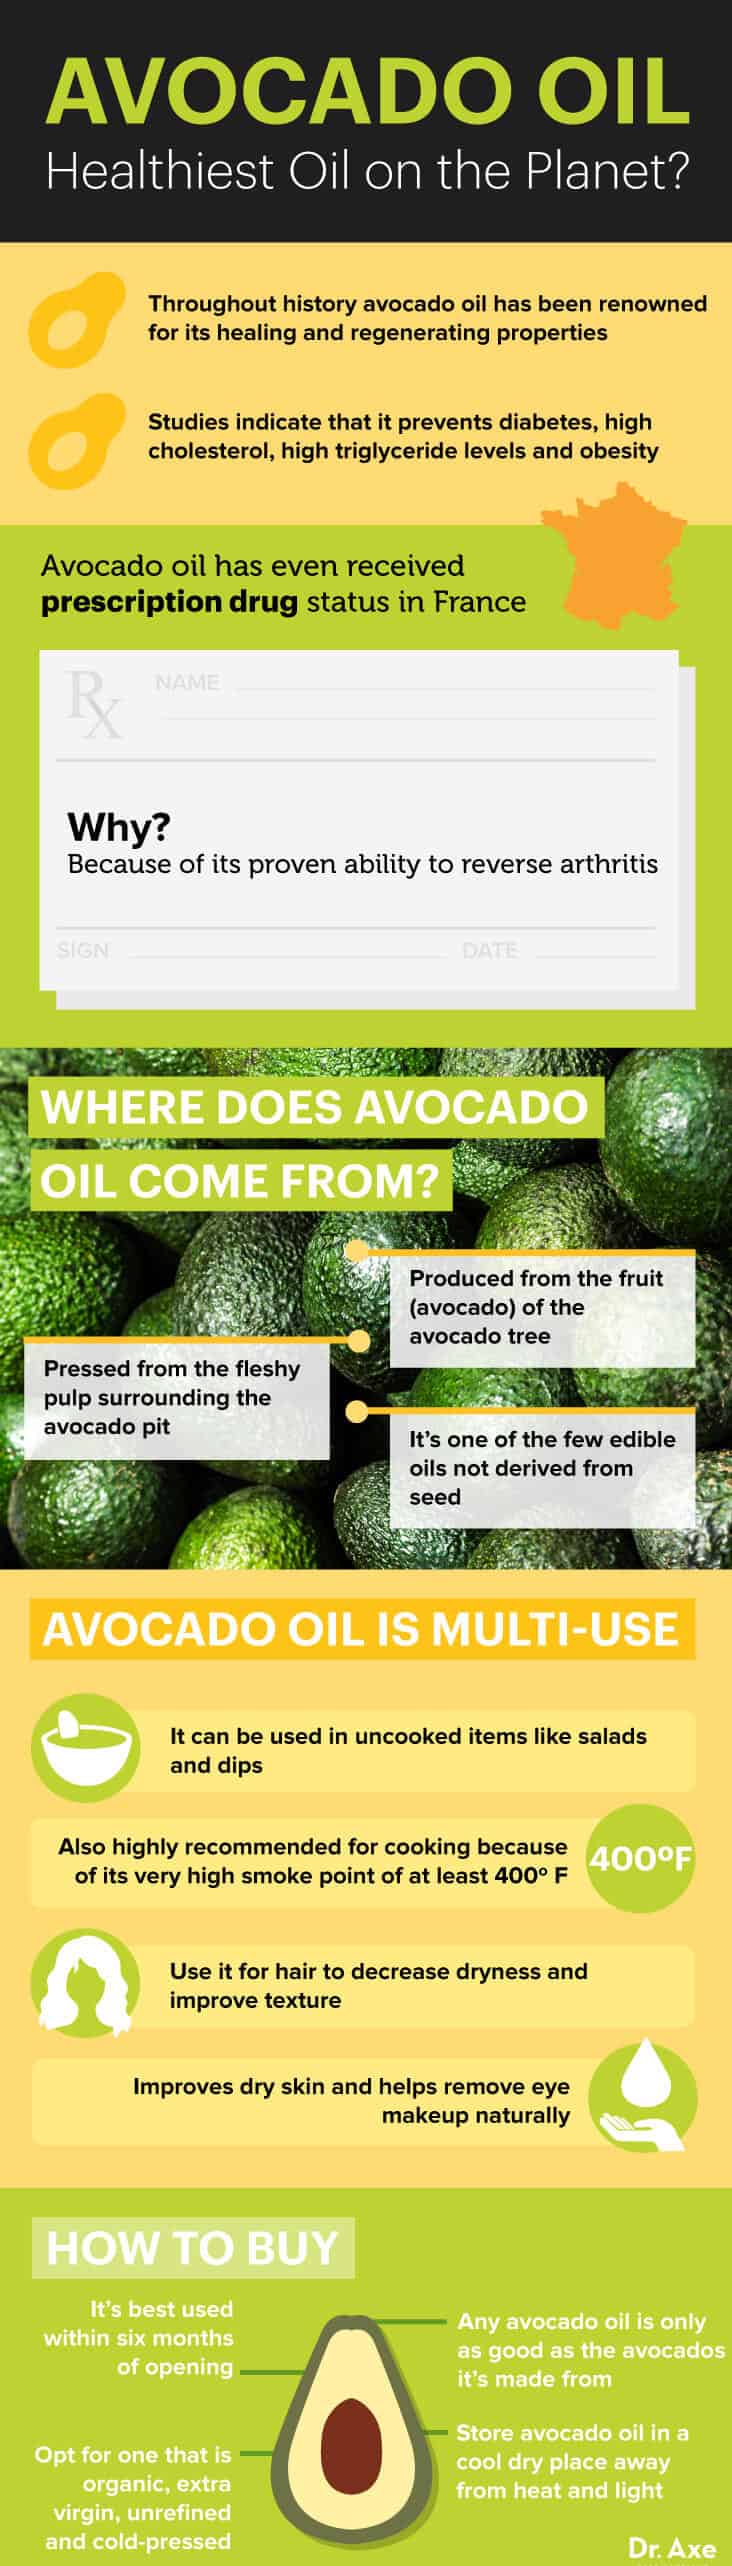 Guide to avocado oil - Dr. Axe